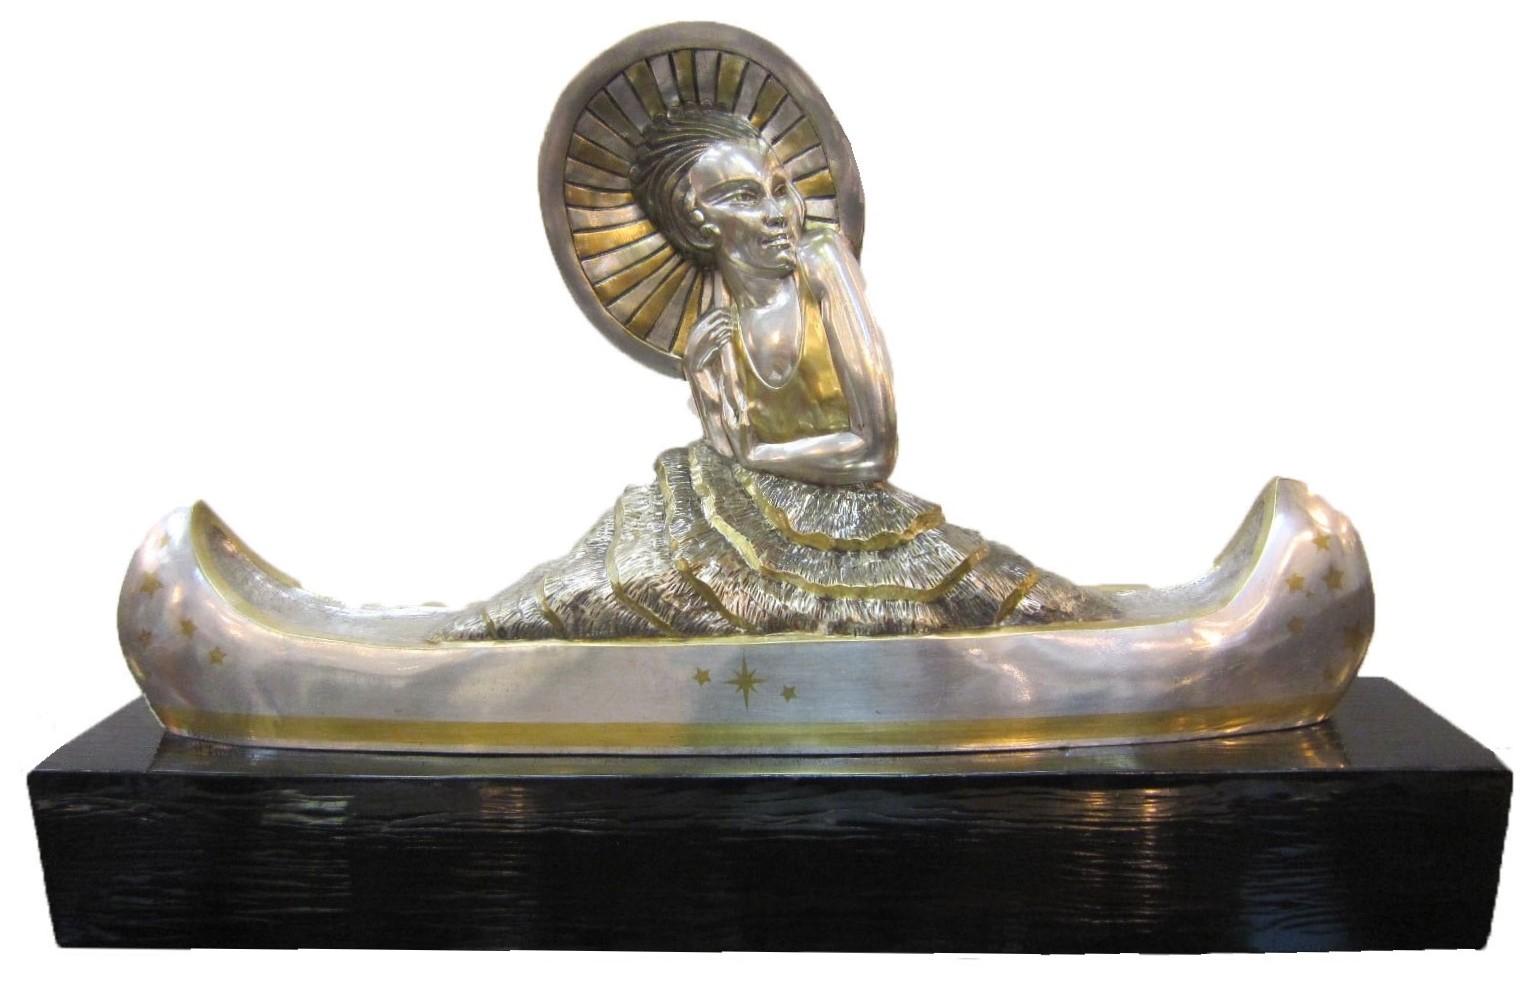 Marie-Louise Simard (Französisch, 1886-1963)
Eine große und bedeutende Original-Skulptur aus französischem Art déco-Silber und parzellierter vergoldeter Bronze, die eine weibliche Figur mit Sonnenschirm in einem Kanu darstellt.
Die Figur trägt ein